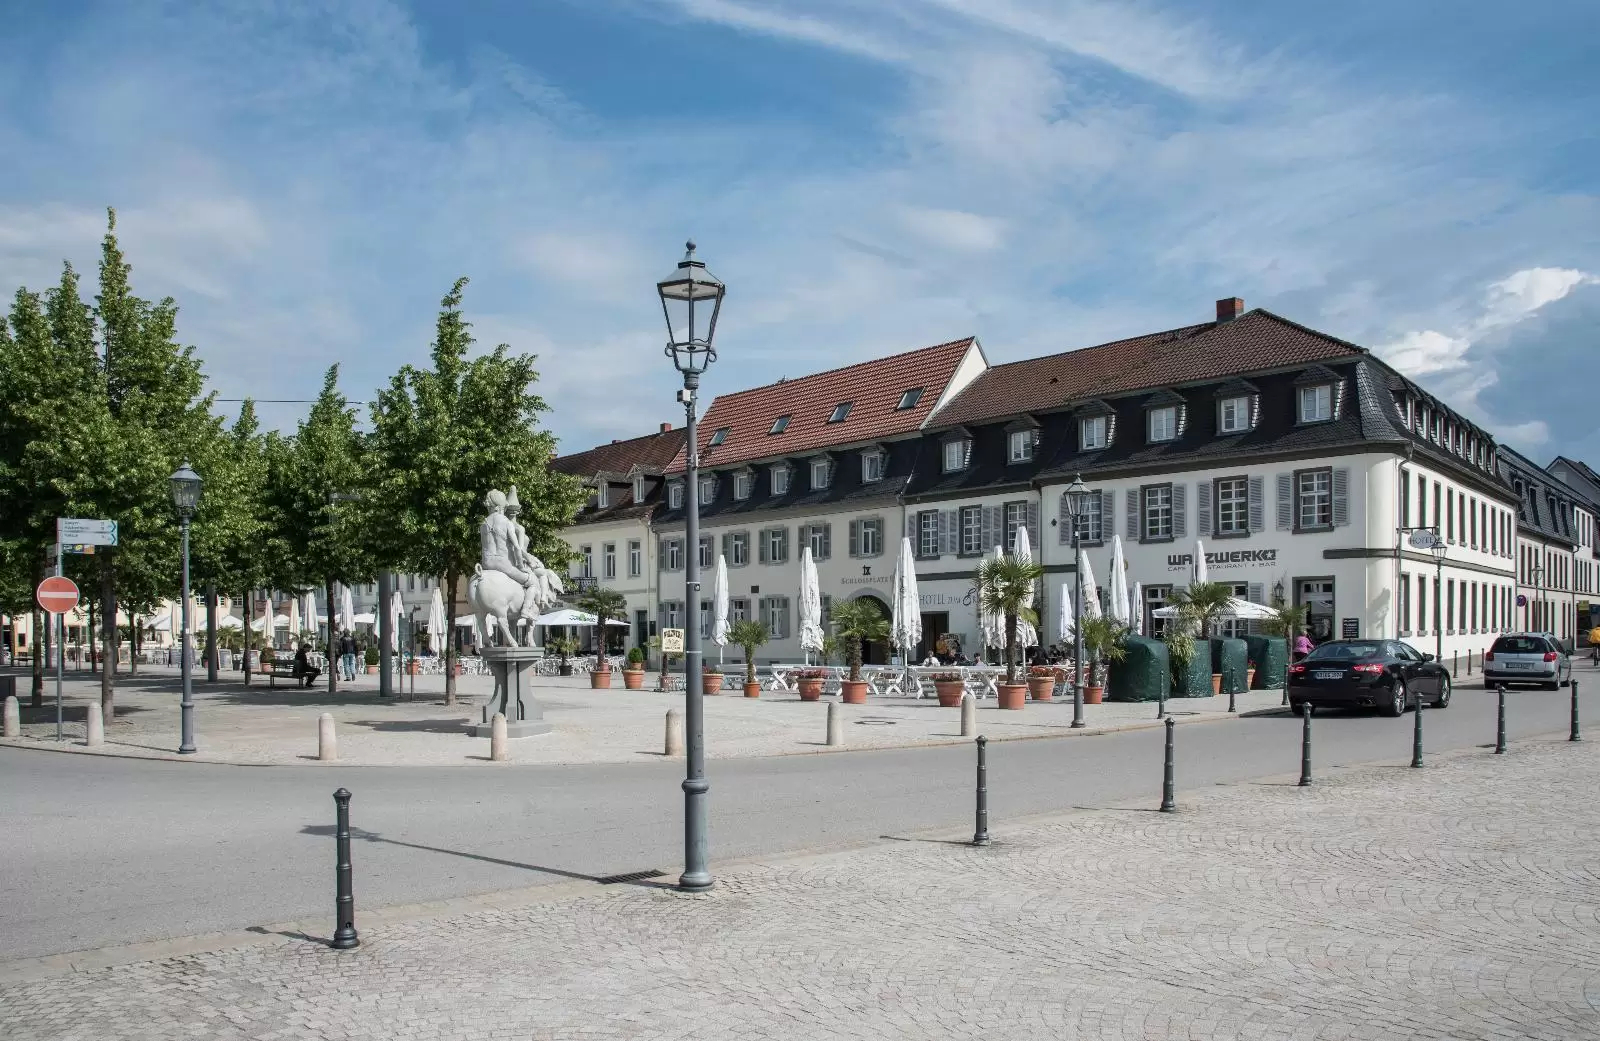 Schwetzingen old town